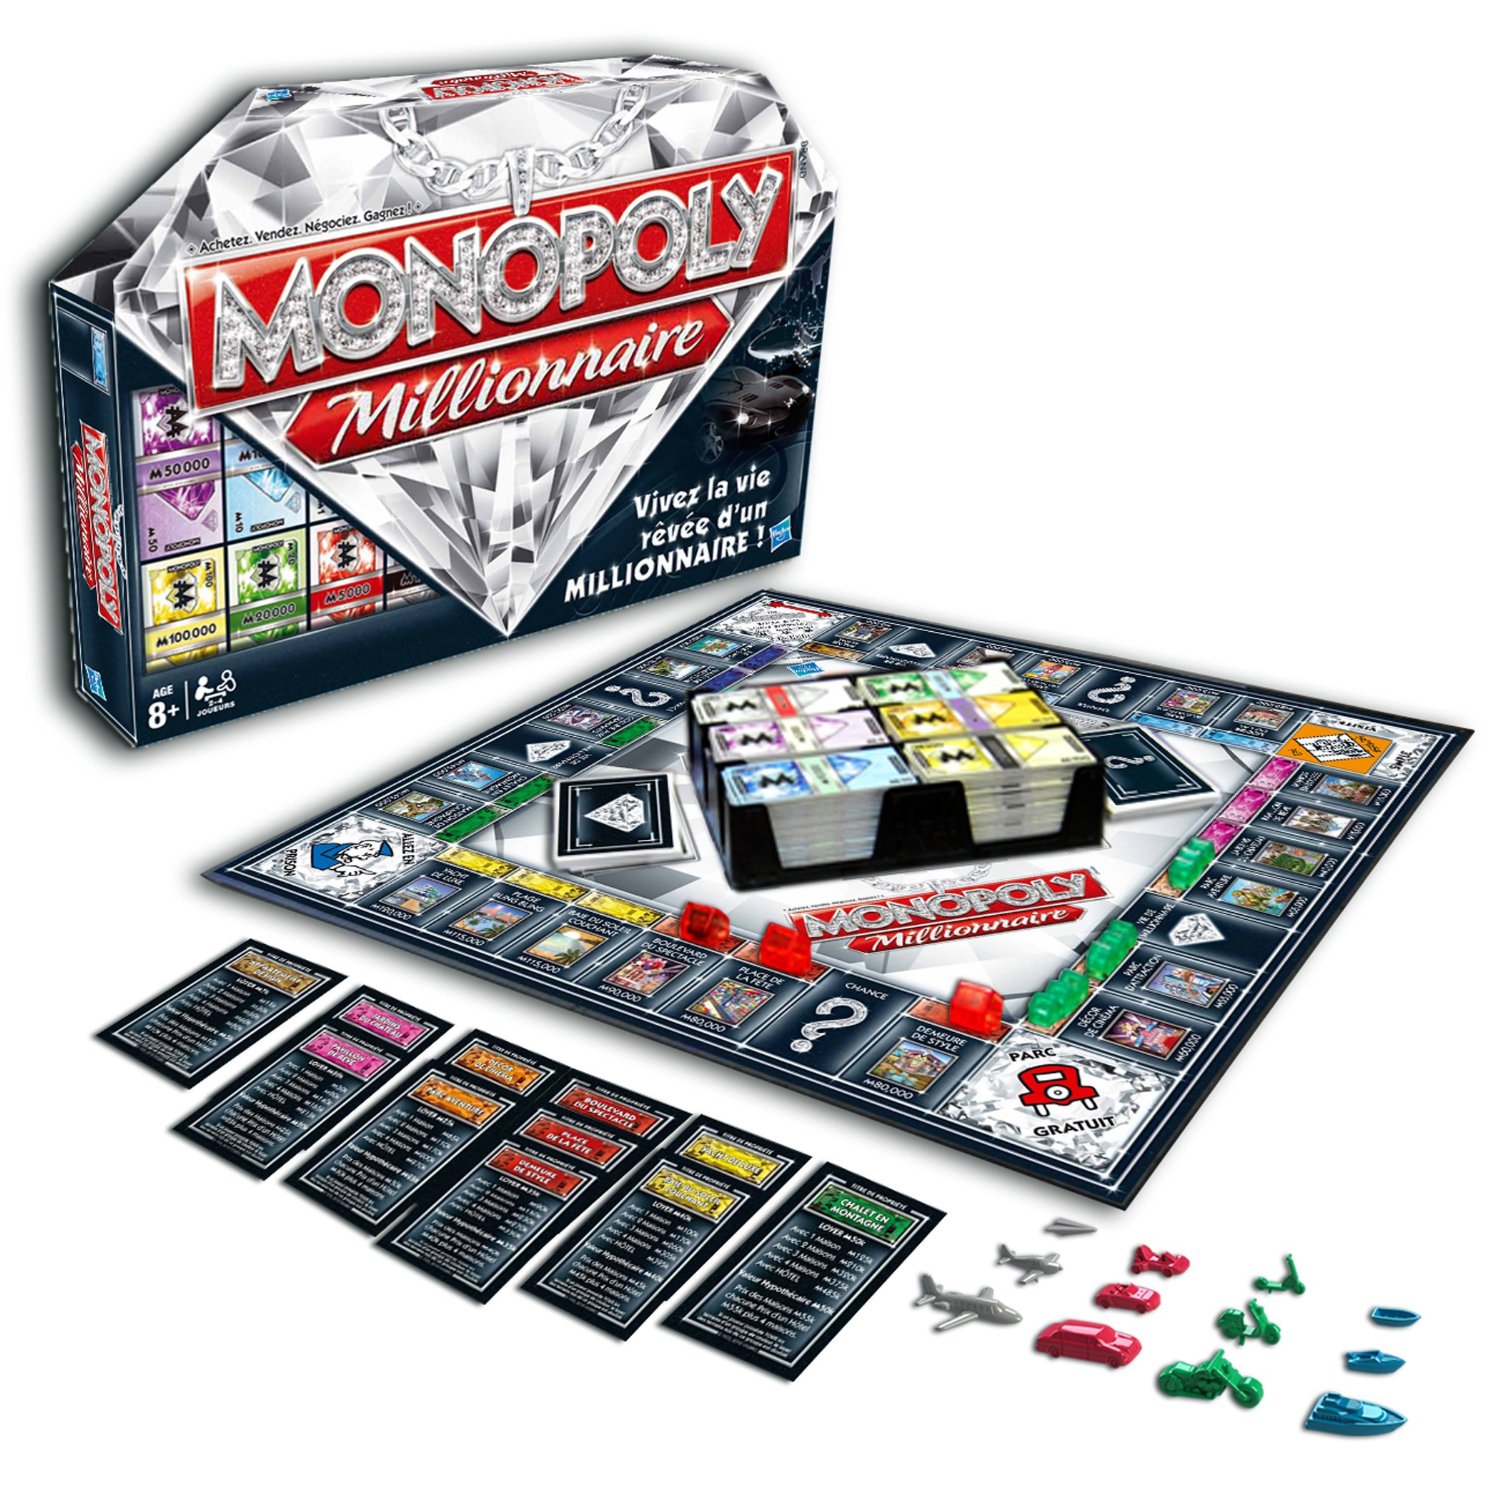 Где Можно Купить Игру Монополия